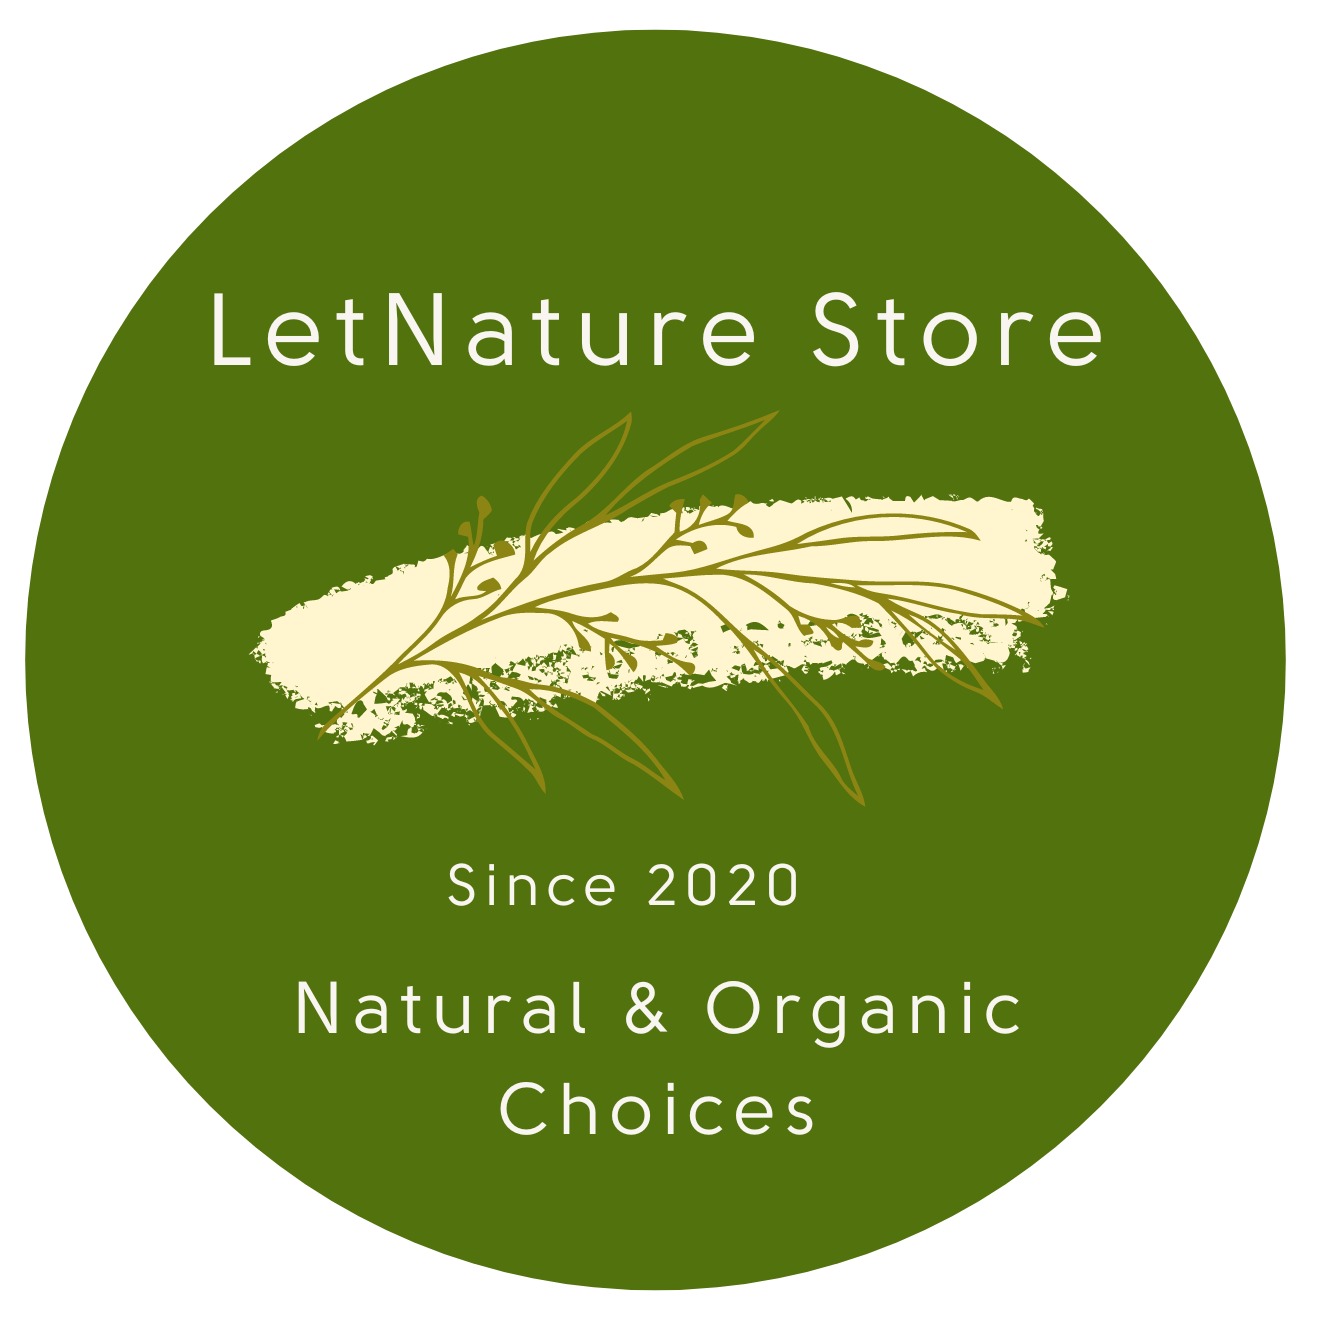 LetNature Store